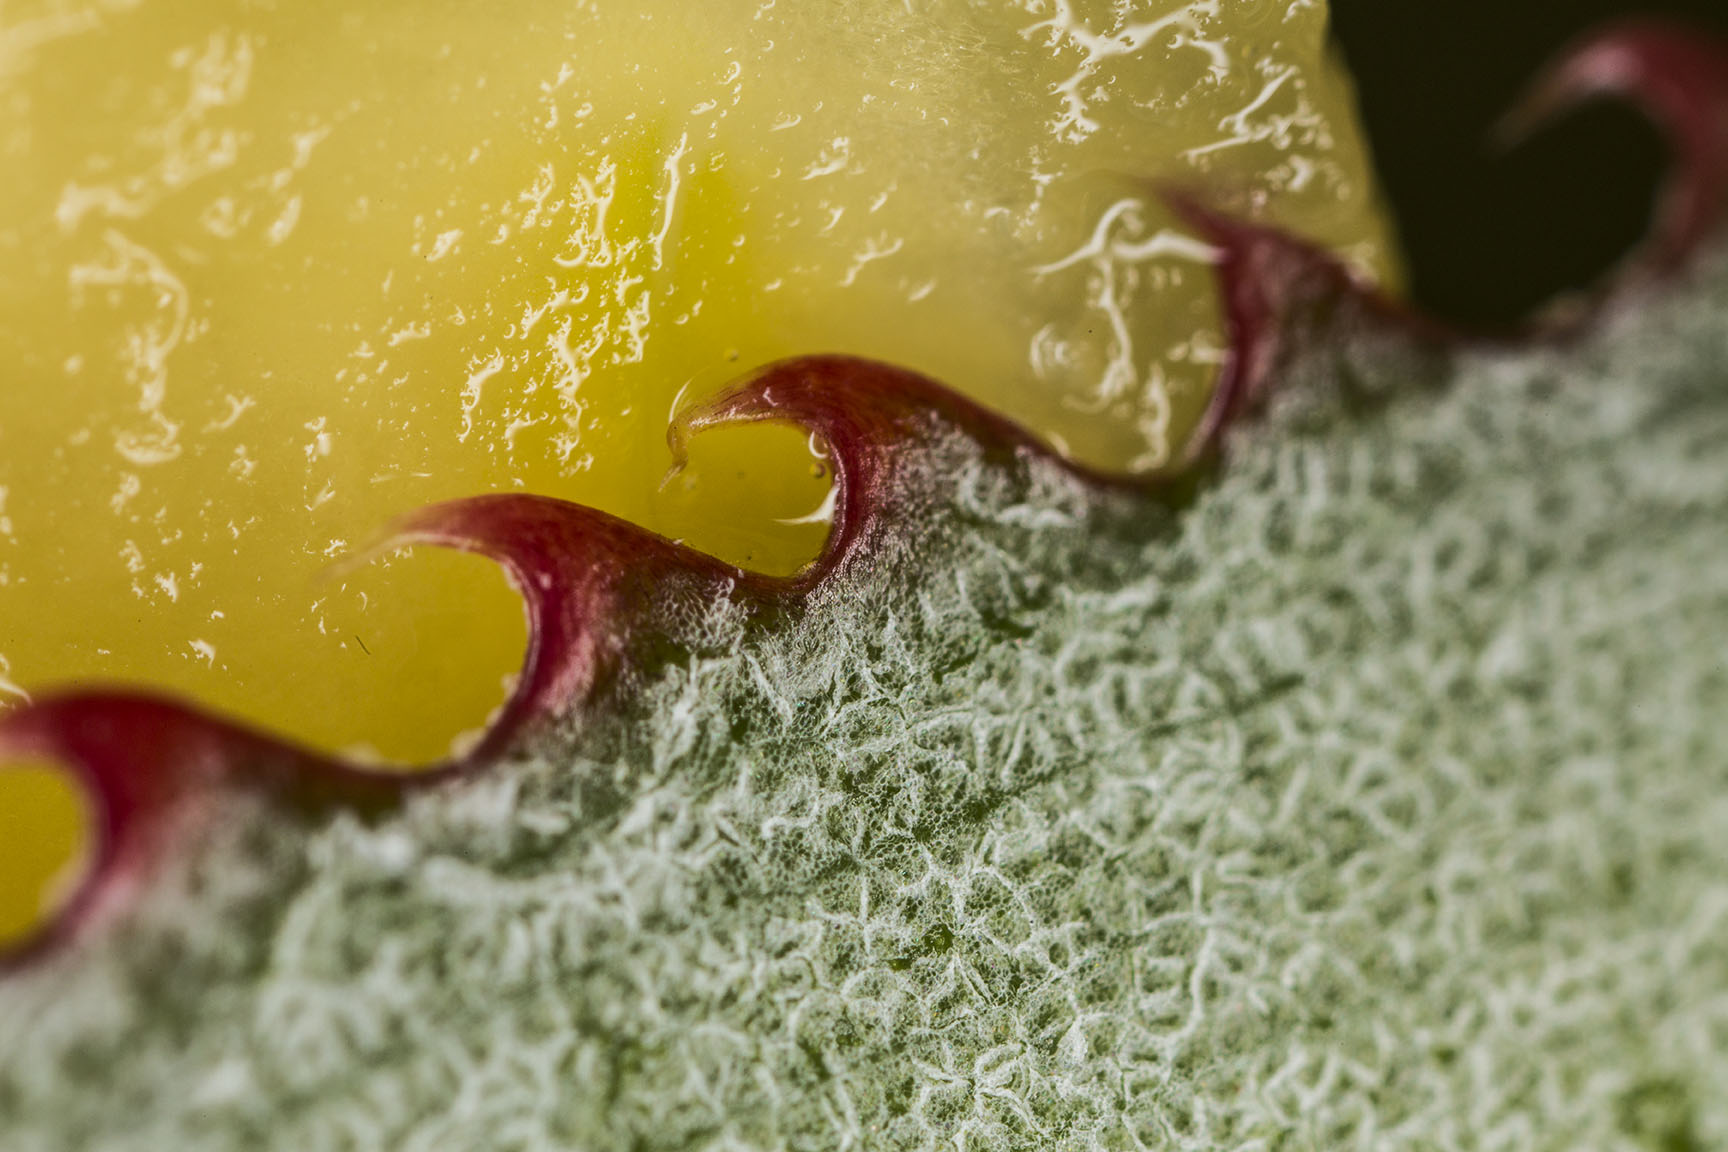 Fruit Closeup